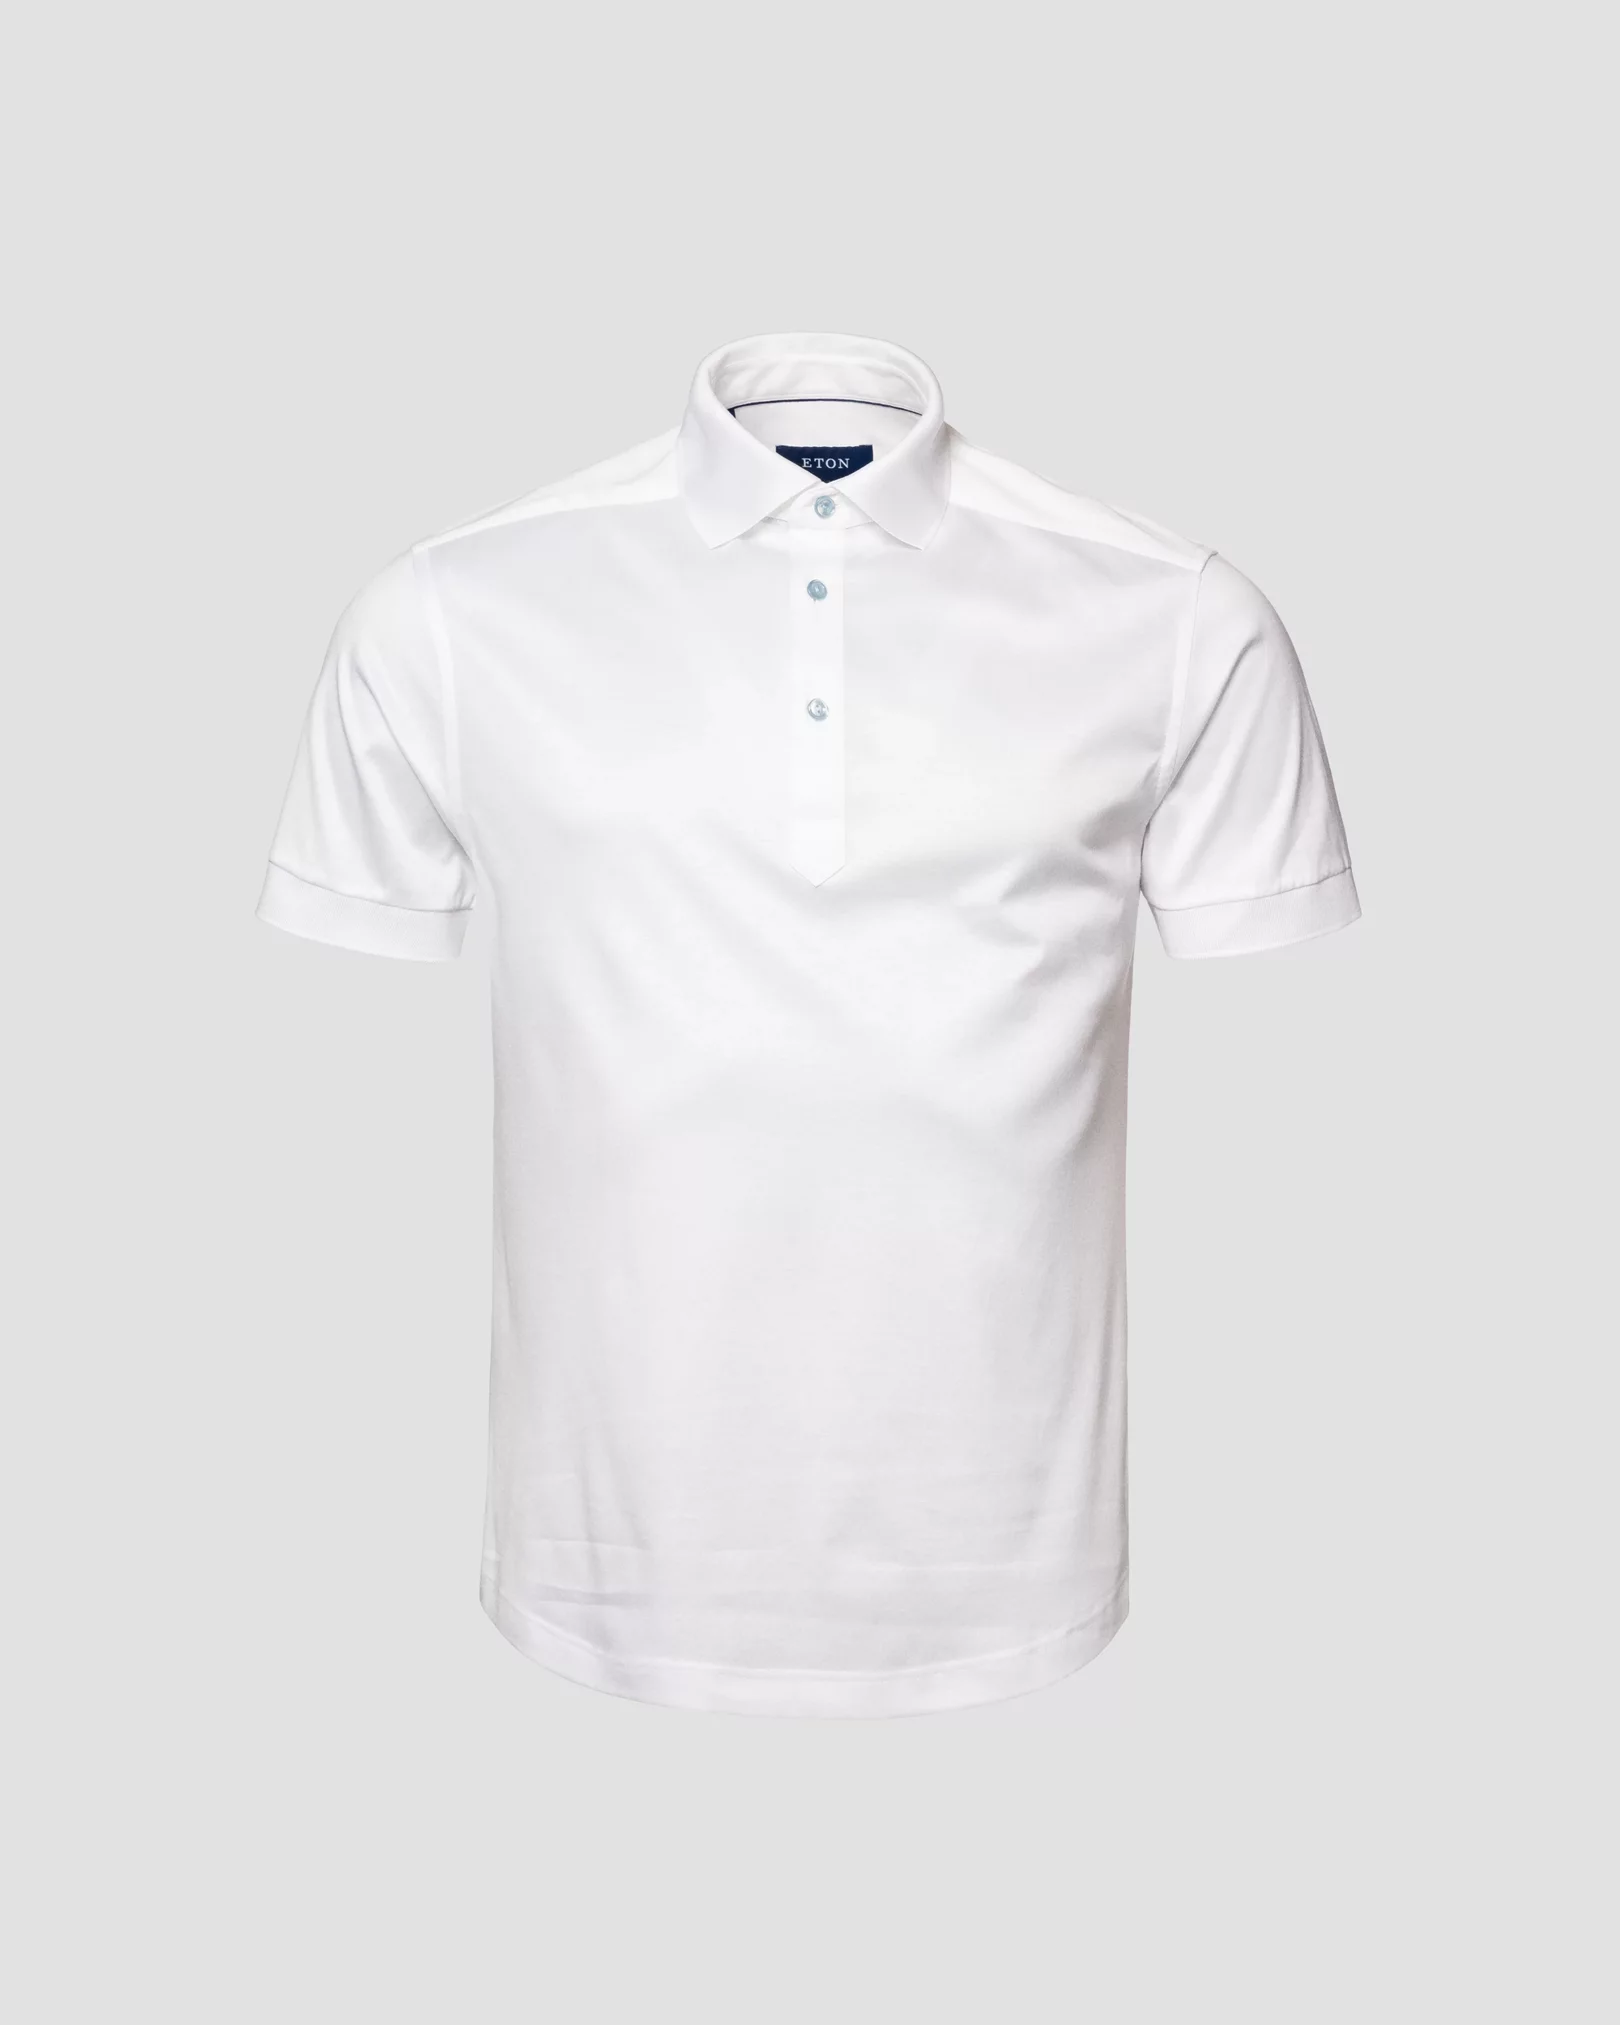 White Jersey Shirt - Eton